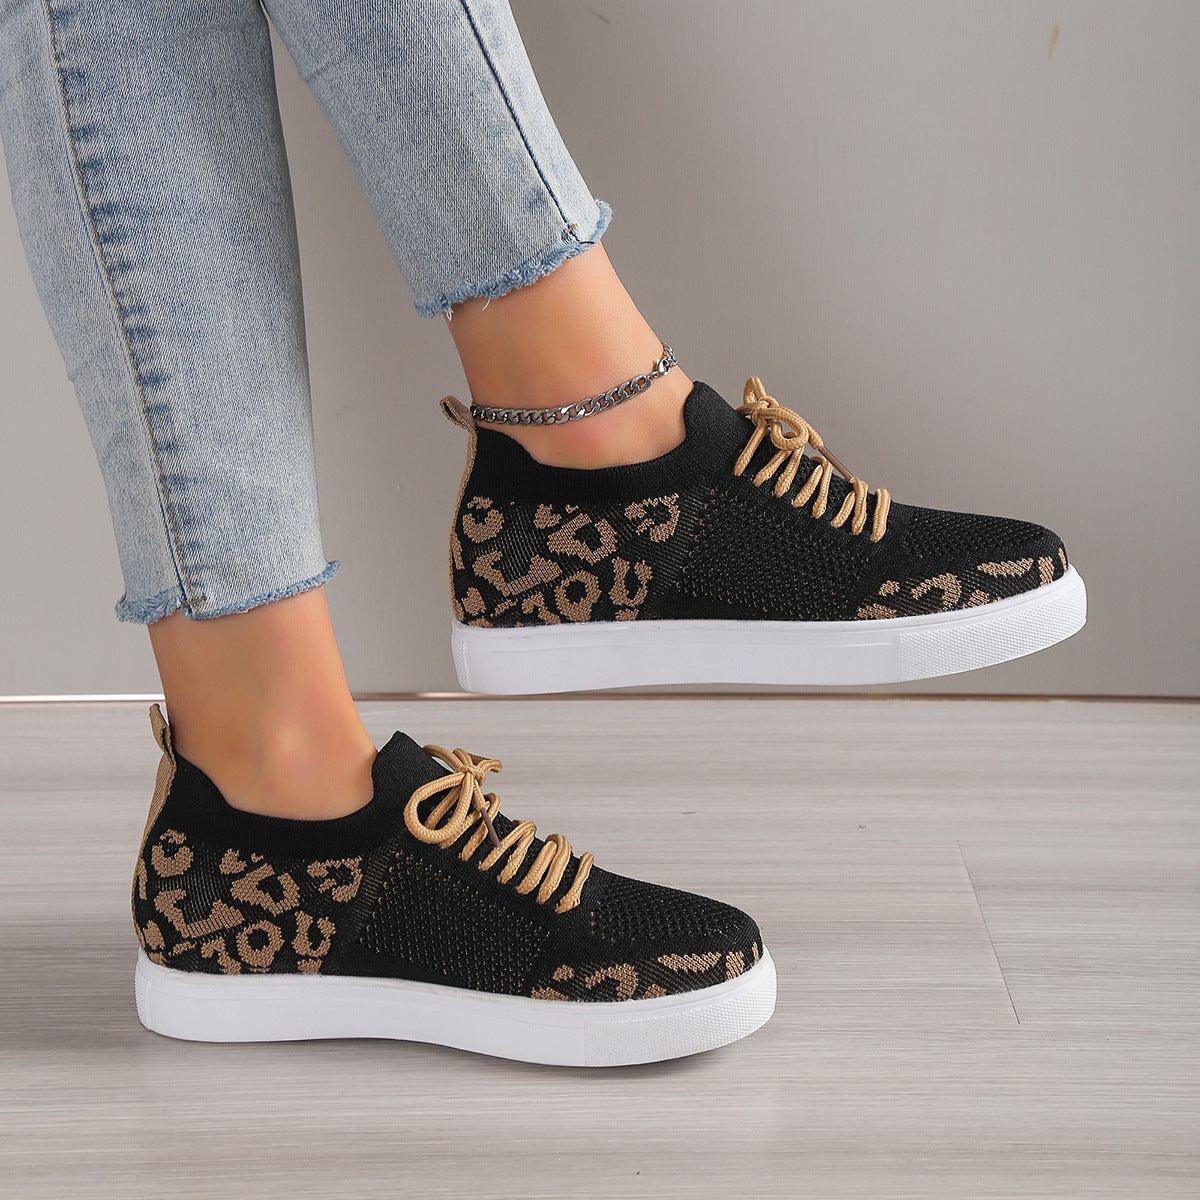 a woman's feet wearing leopard print sneakers